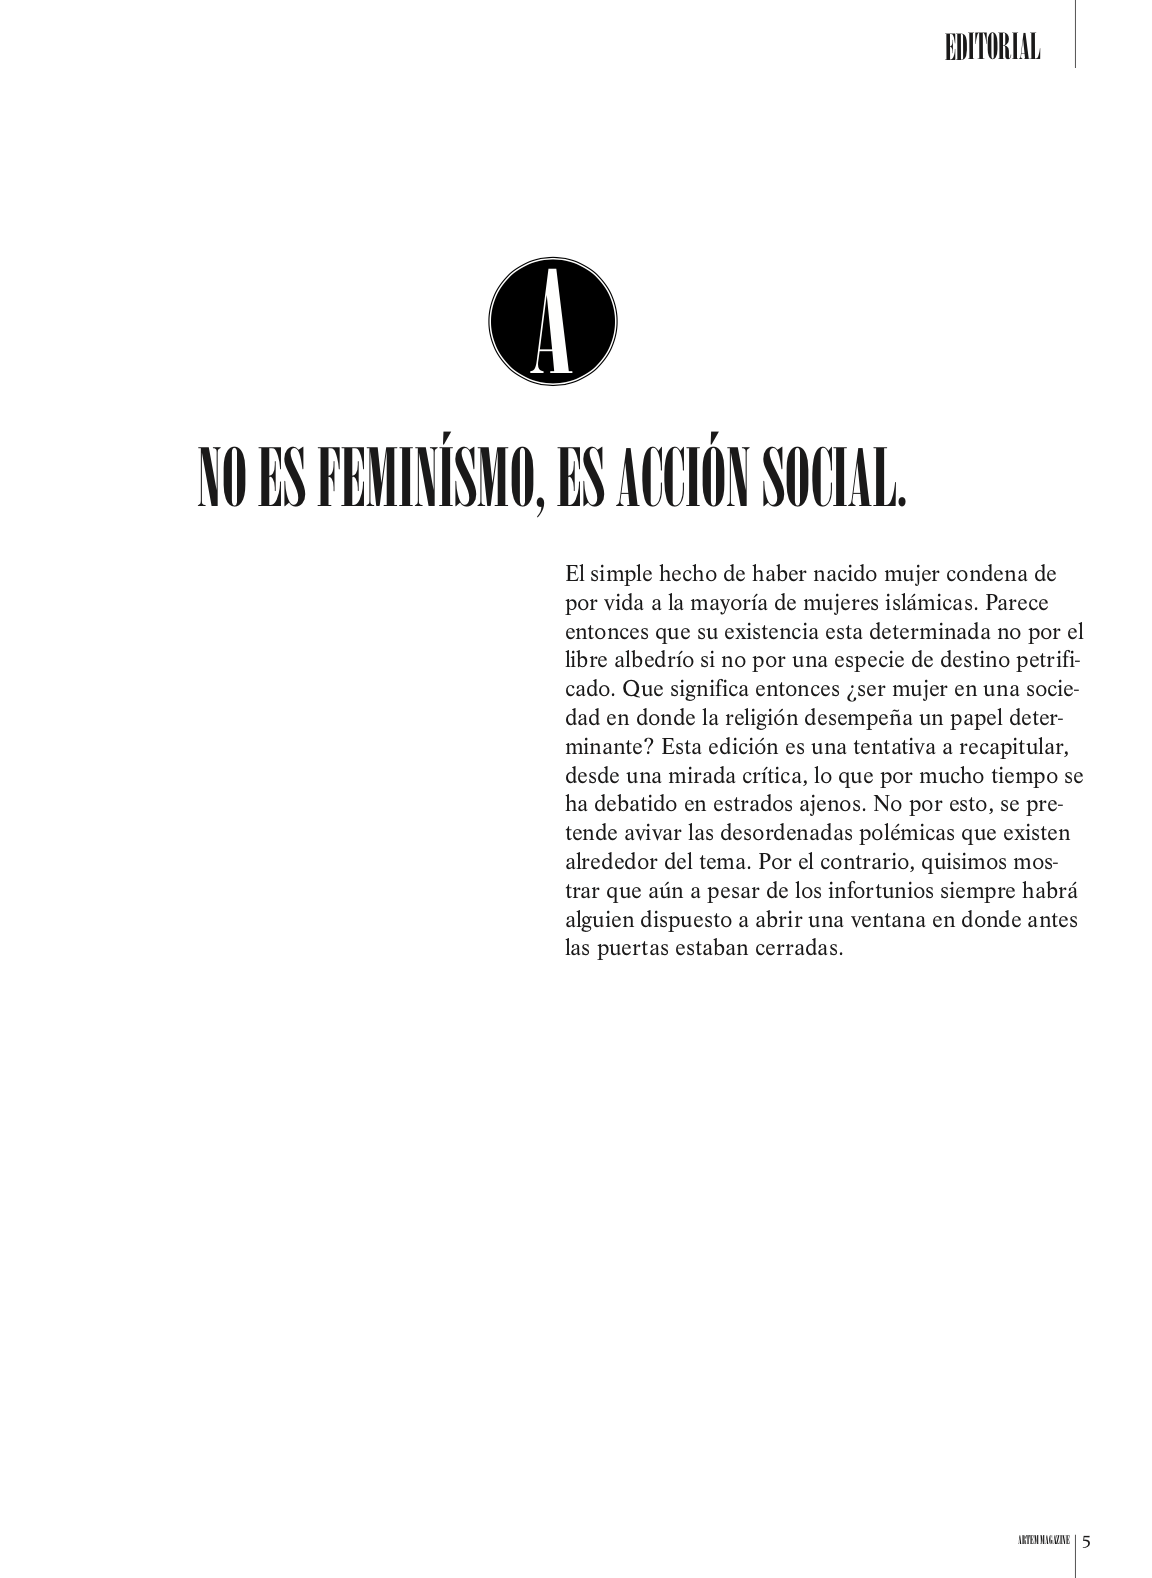 editorial feminism feminismo magazine Periodismo Reportaje revista